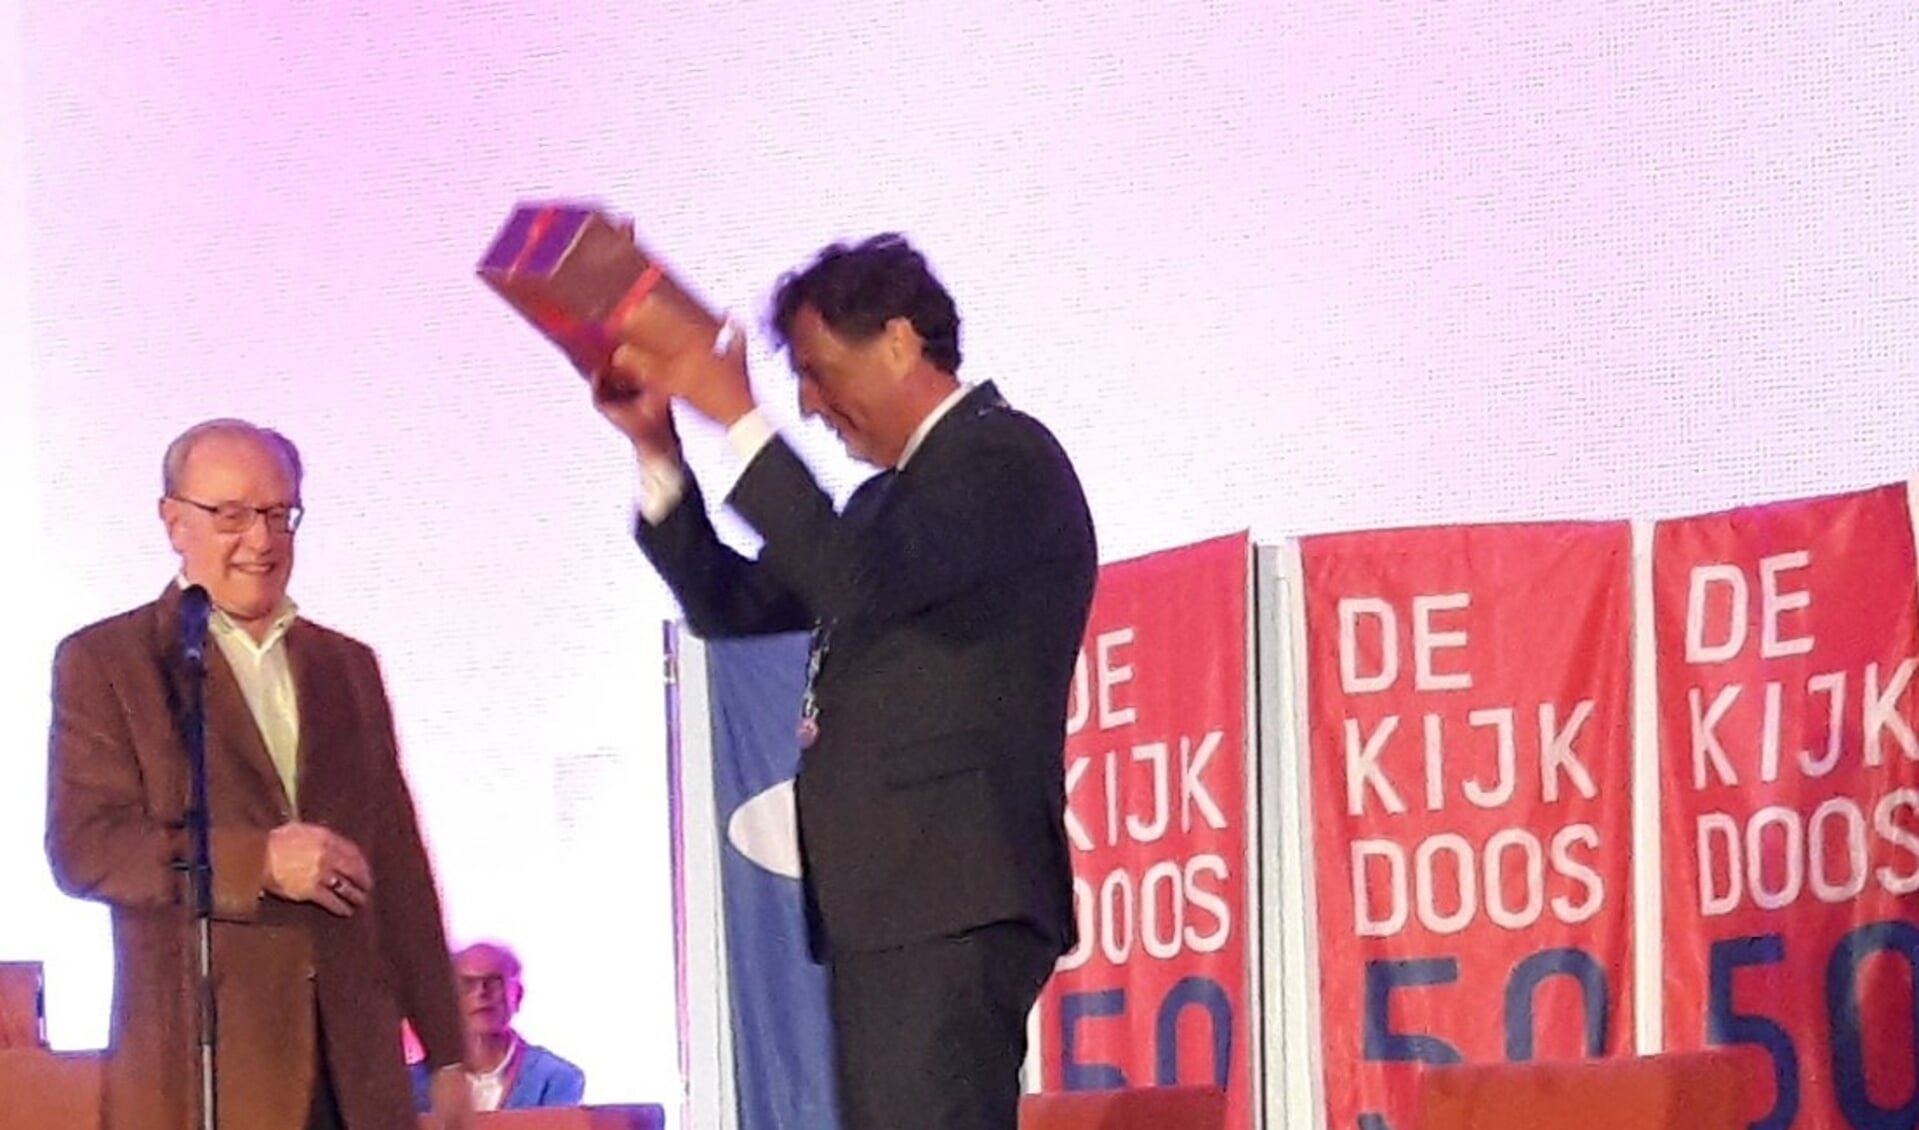 De burgemeester krijgt het Kijkdoos jubileumboek van Jan van den Hazel en houdt het juichend omhoog